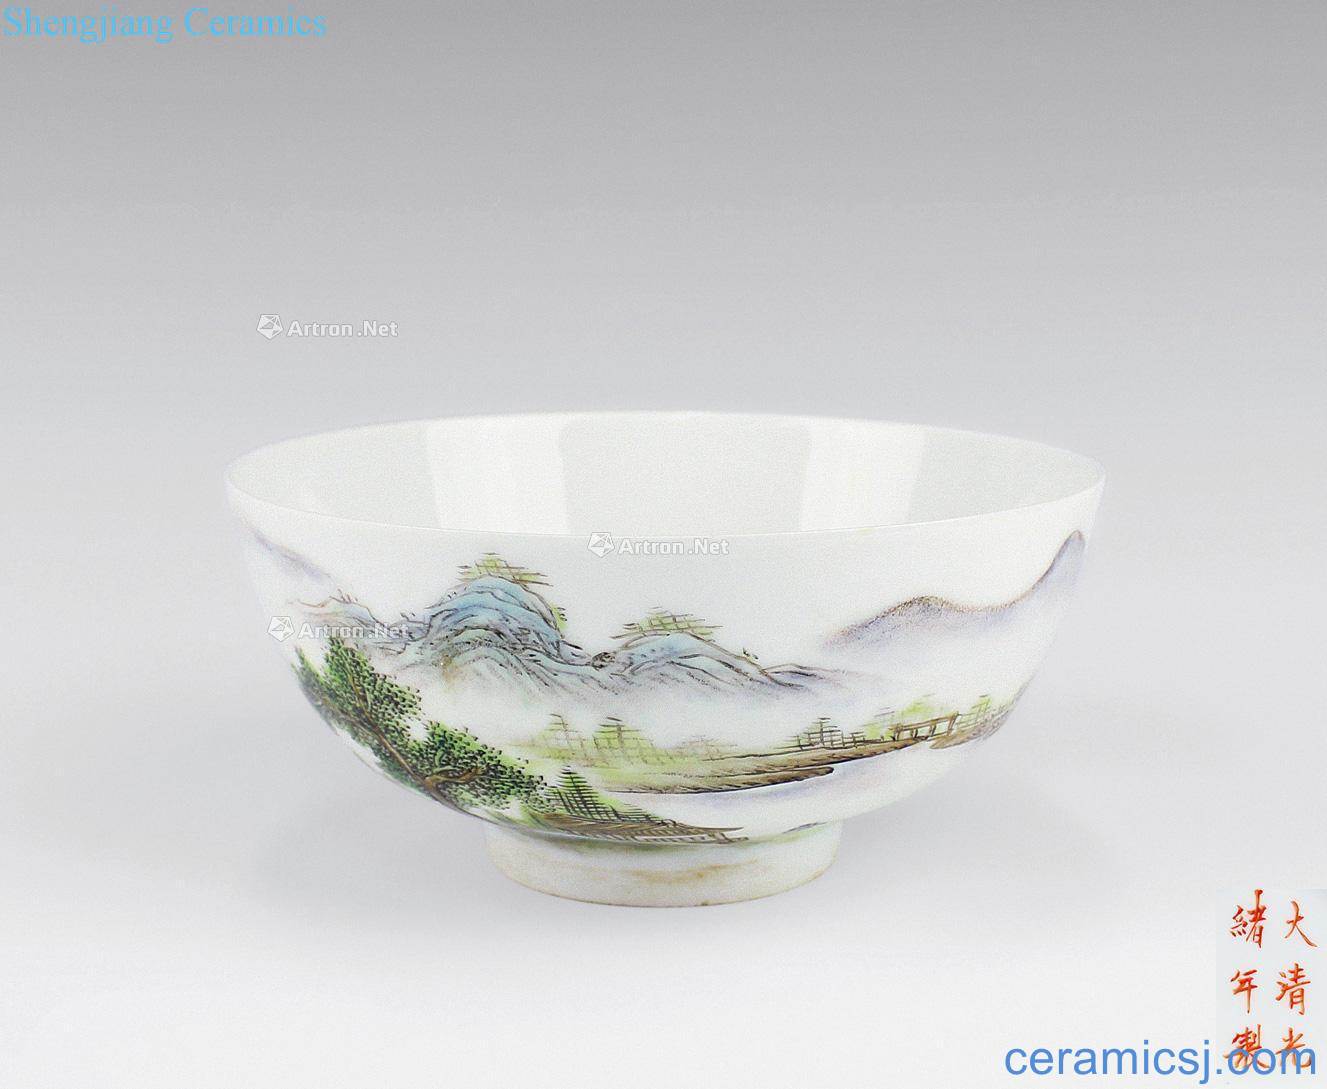 Clear pastel landscape green-splashed bowls